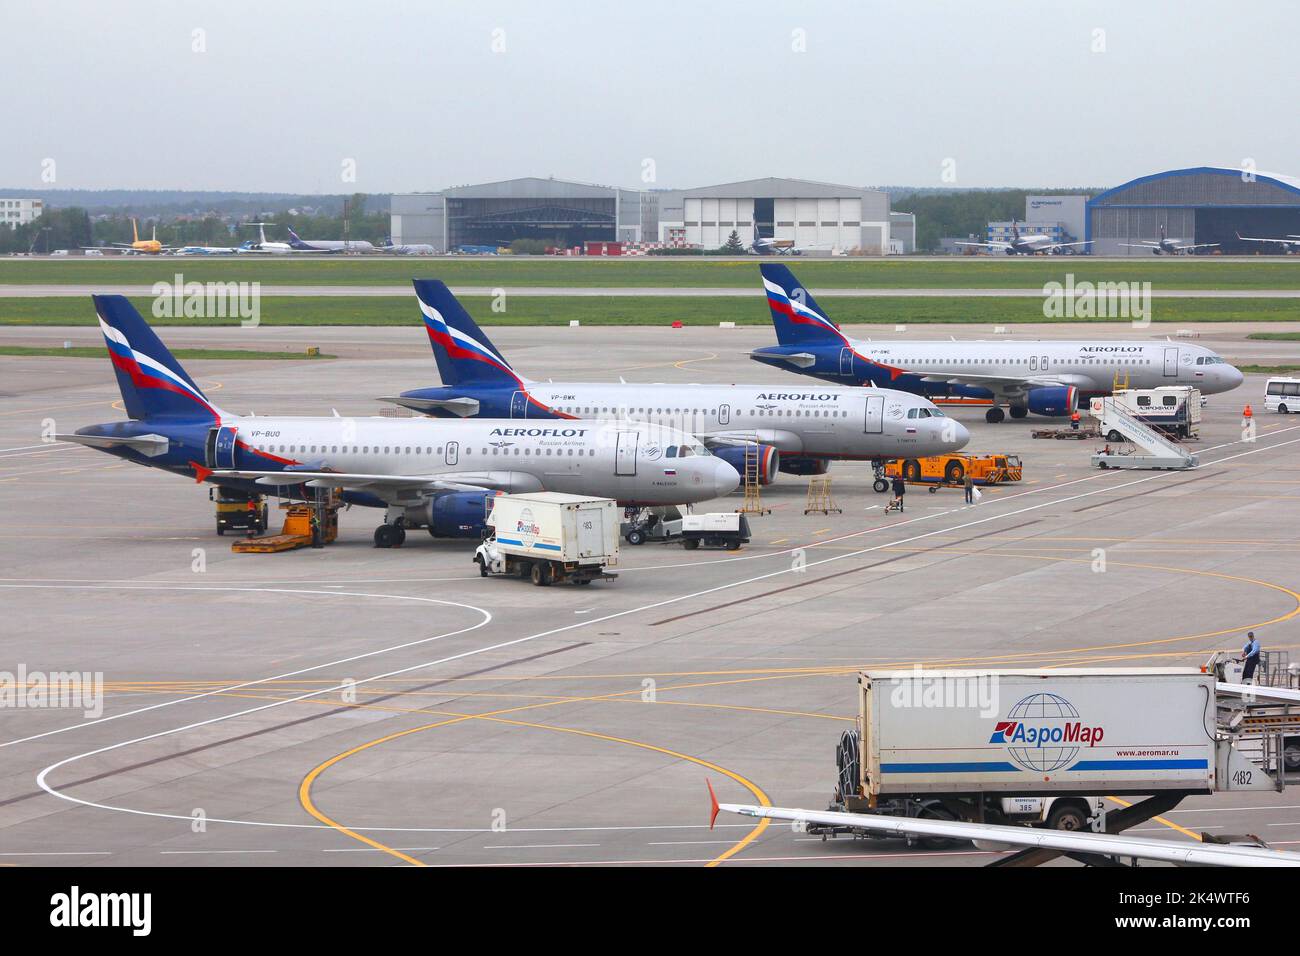 Mosca, RUSSIA - 12 MAGGIO 2012: Aeroflot Russian Airlines flotta all'aeroporto Sheremetyevo di Mosca, Russia. Sheremetyevo (SVO) è l'aeroporto più trafficato di Ru Foto Stock